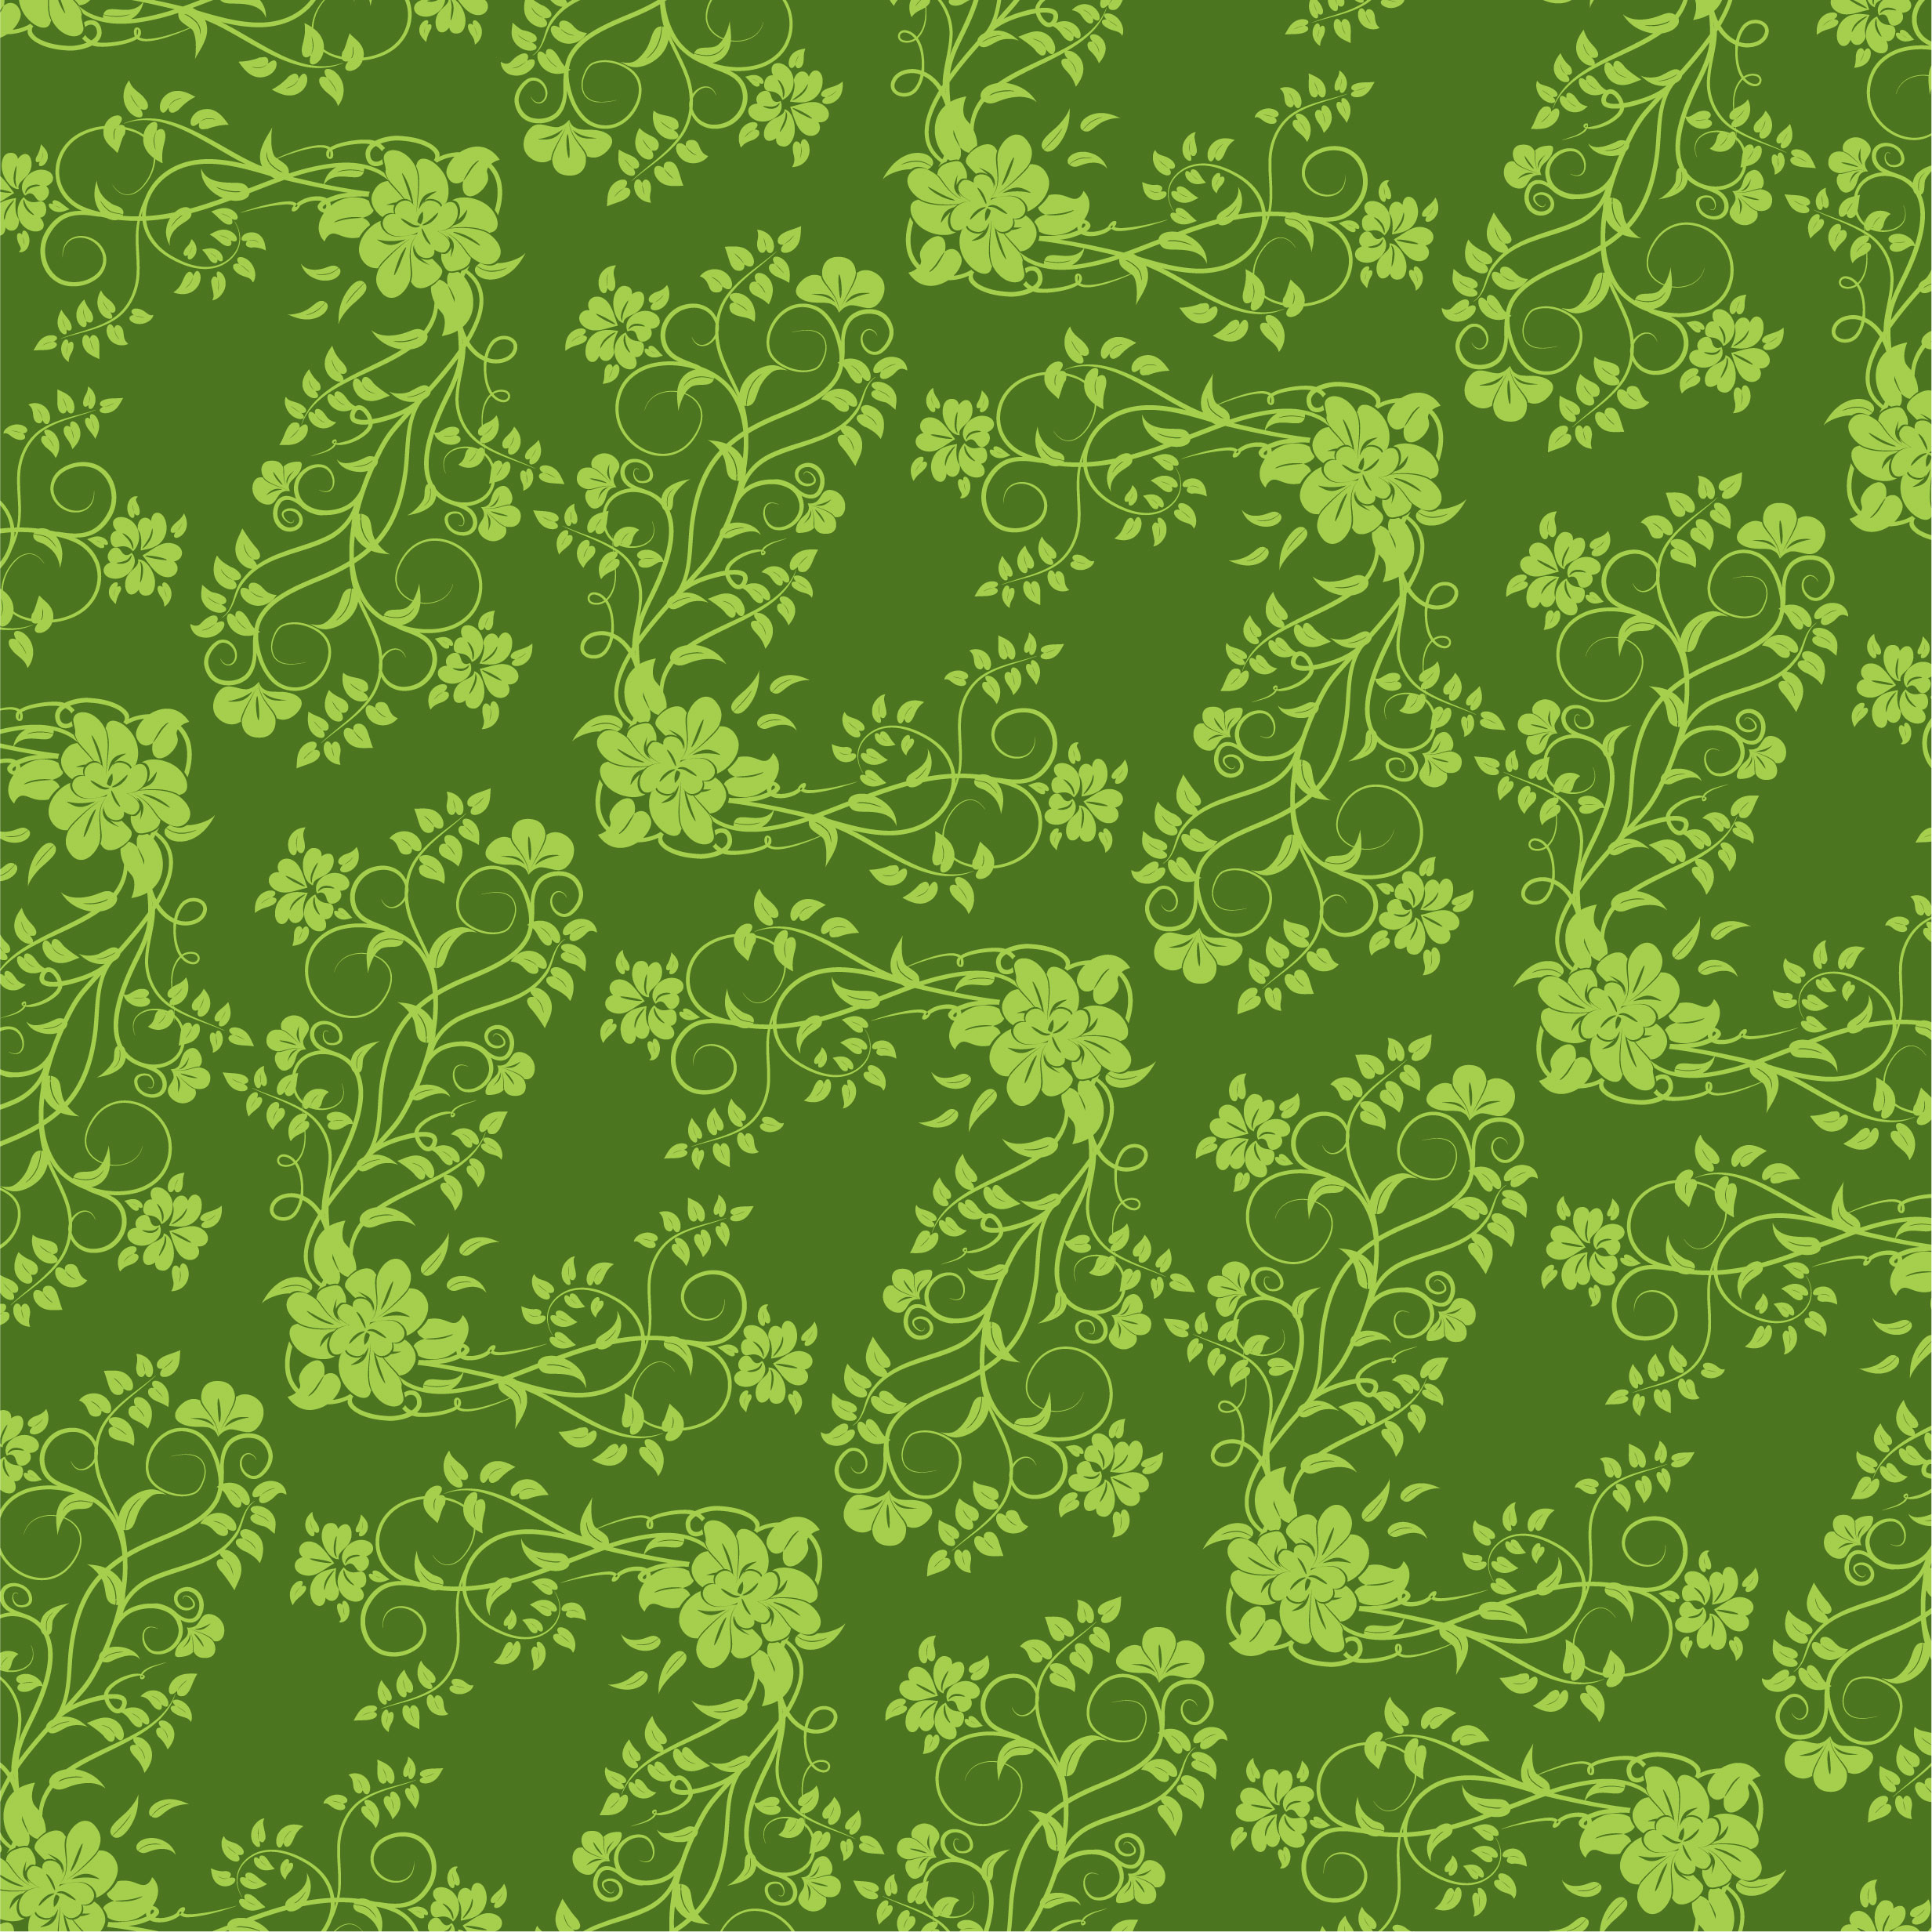 緑色の花のイラスト フリー素材 背景 壁紙no 175 緑 茎葉